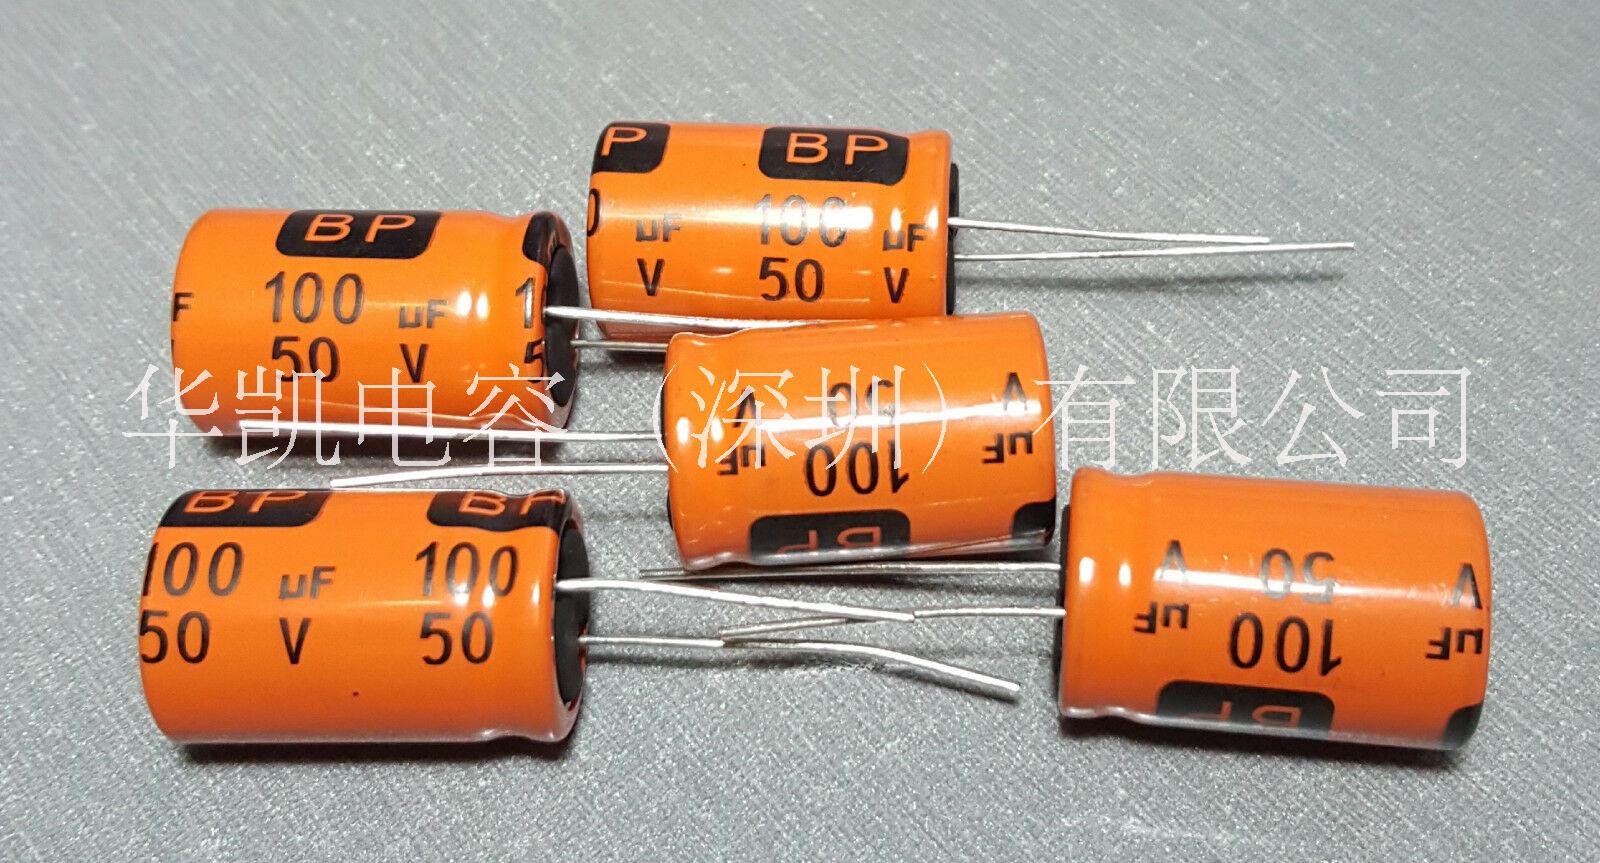 导针型双极性铝电解电容器导针型双极性铝电解电容器-BP33uf100v  105°c